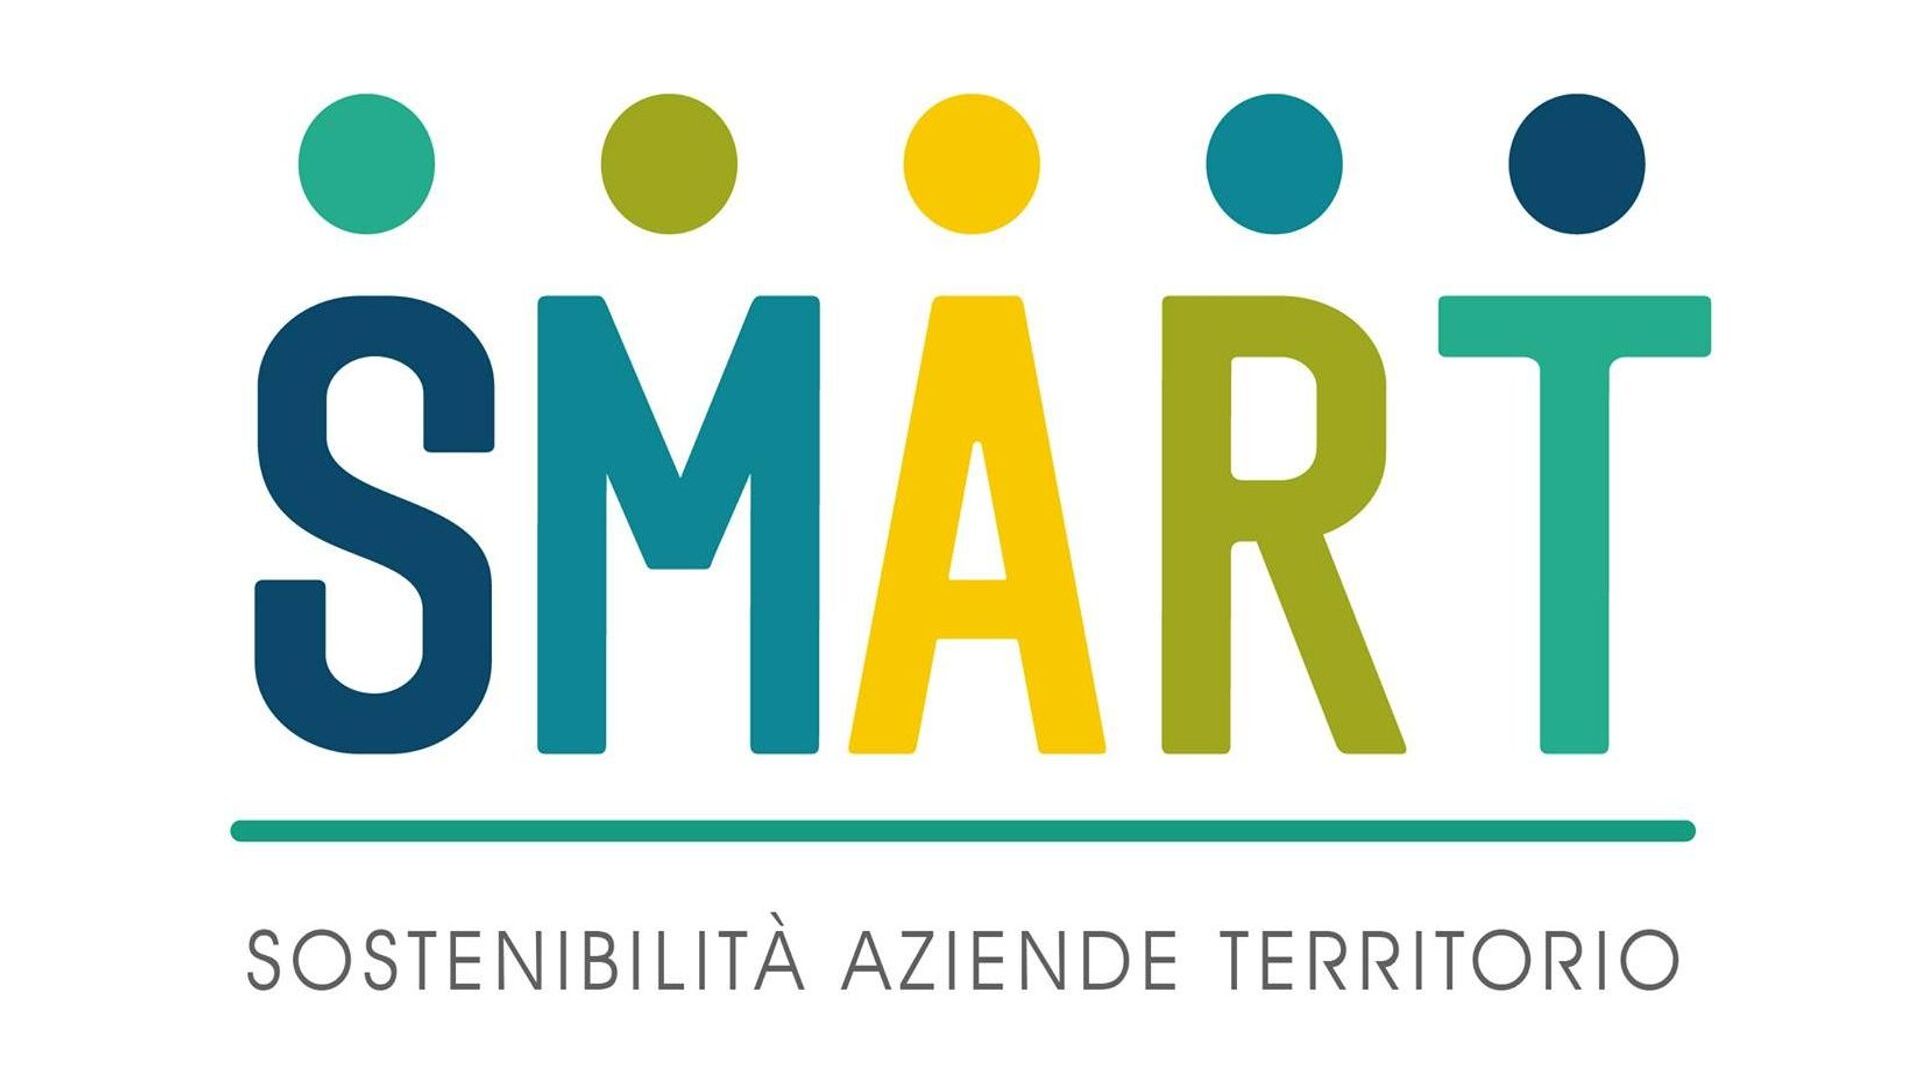 SMART projesinin logosu (Sınır Ötesi Bölgede Sürdürülebilir Stratejiler ve Sorumlu İş Modelleri)